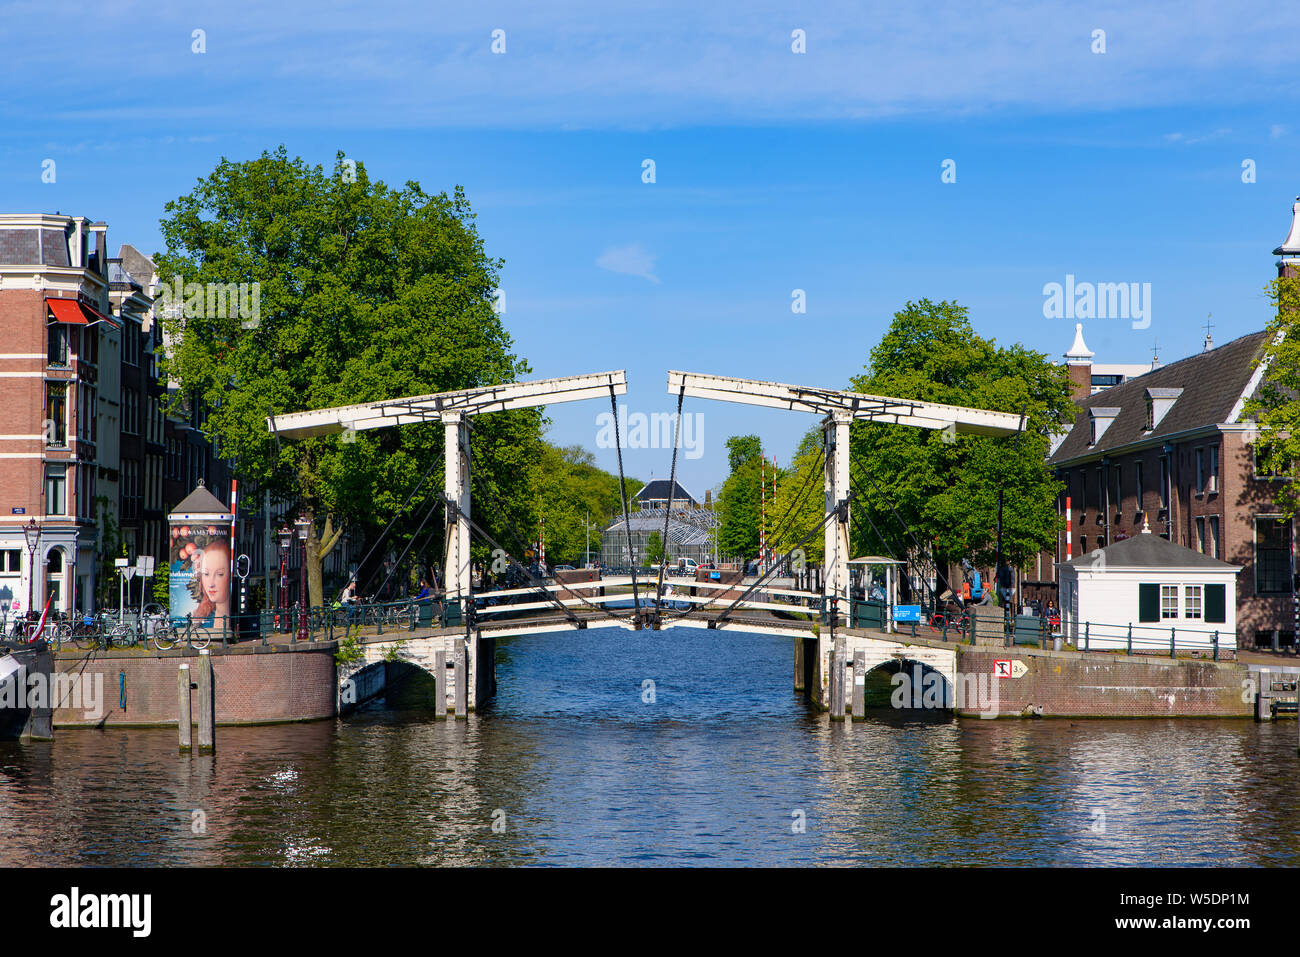 Bâtiments, arbres, et bateaux le long du canal à Amsterdam, Pays-Bas Banque D'Images